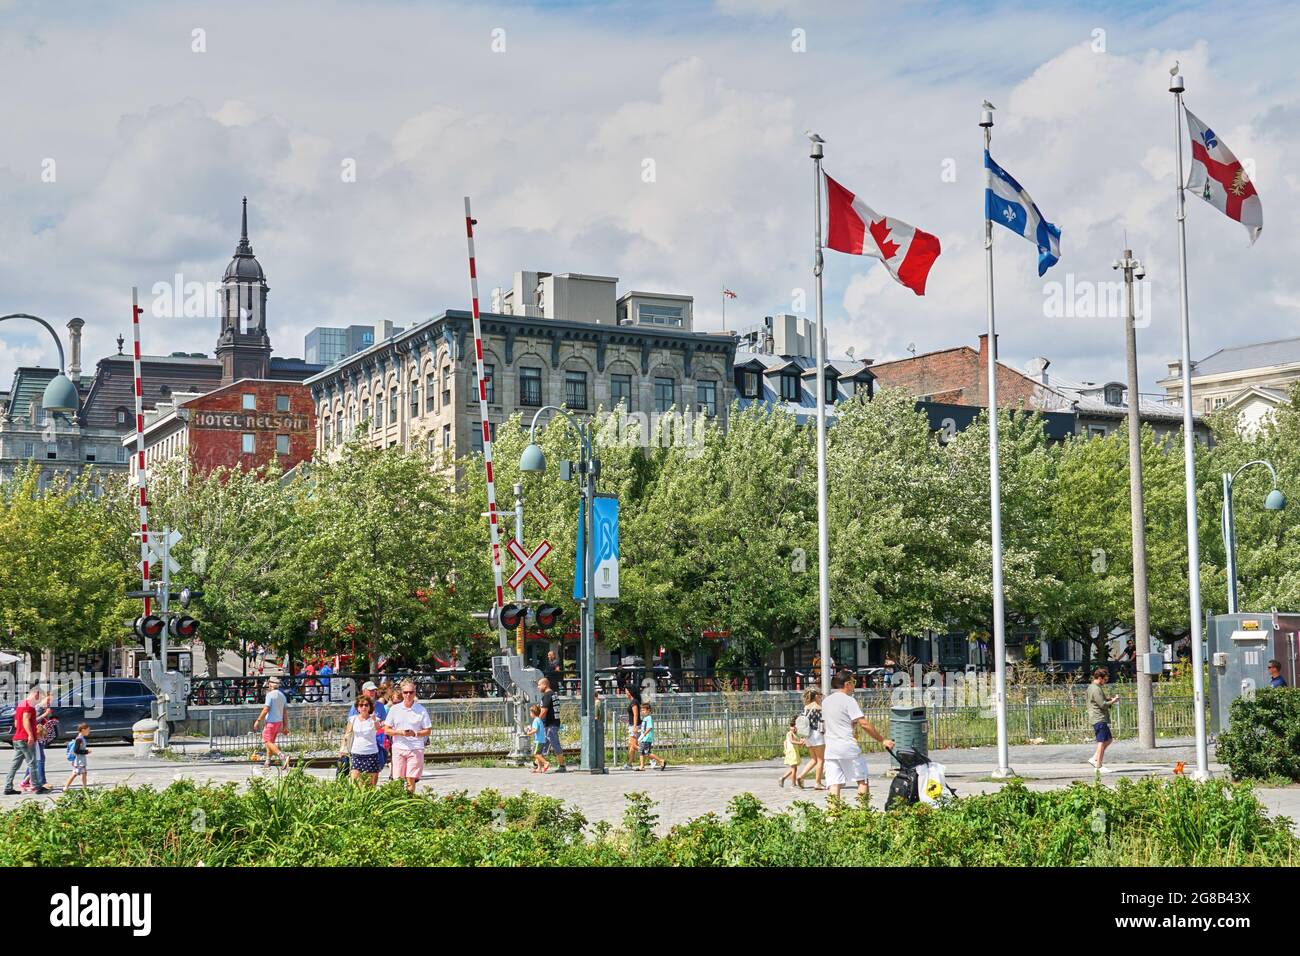 Canadá, Montreal - 11 de julio de 2021: Vista panorámica del Puerto Viejo de Montreal. El puerto antiguo es un lugar histórico, situado entre el casco antiguo de Montreal y el St. Lawrenc Foto de stock